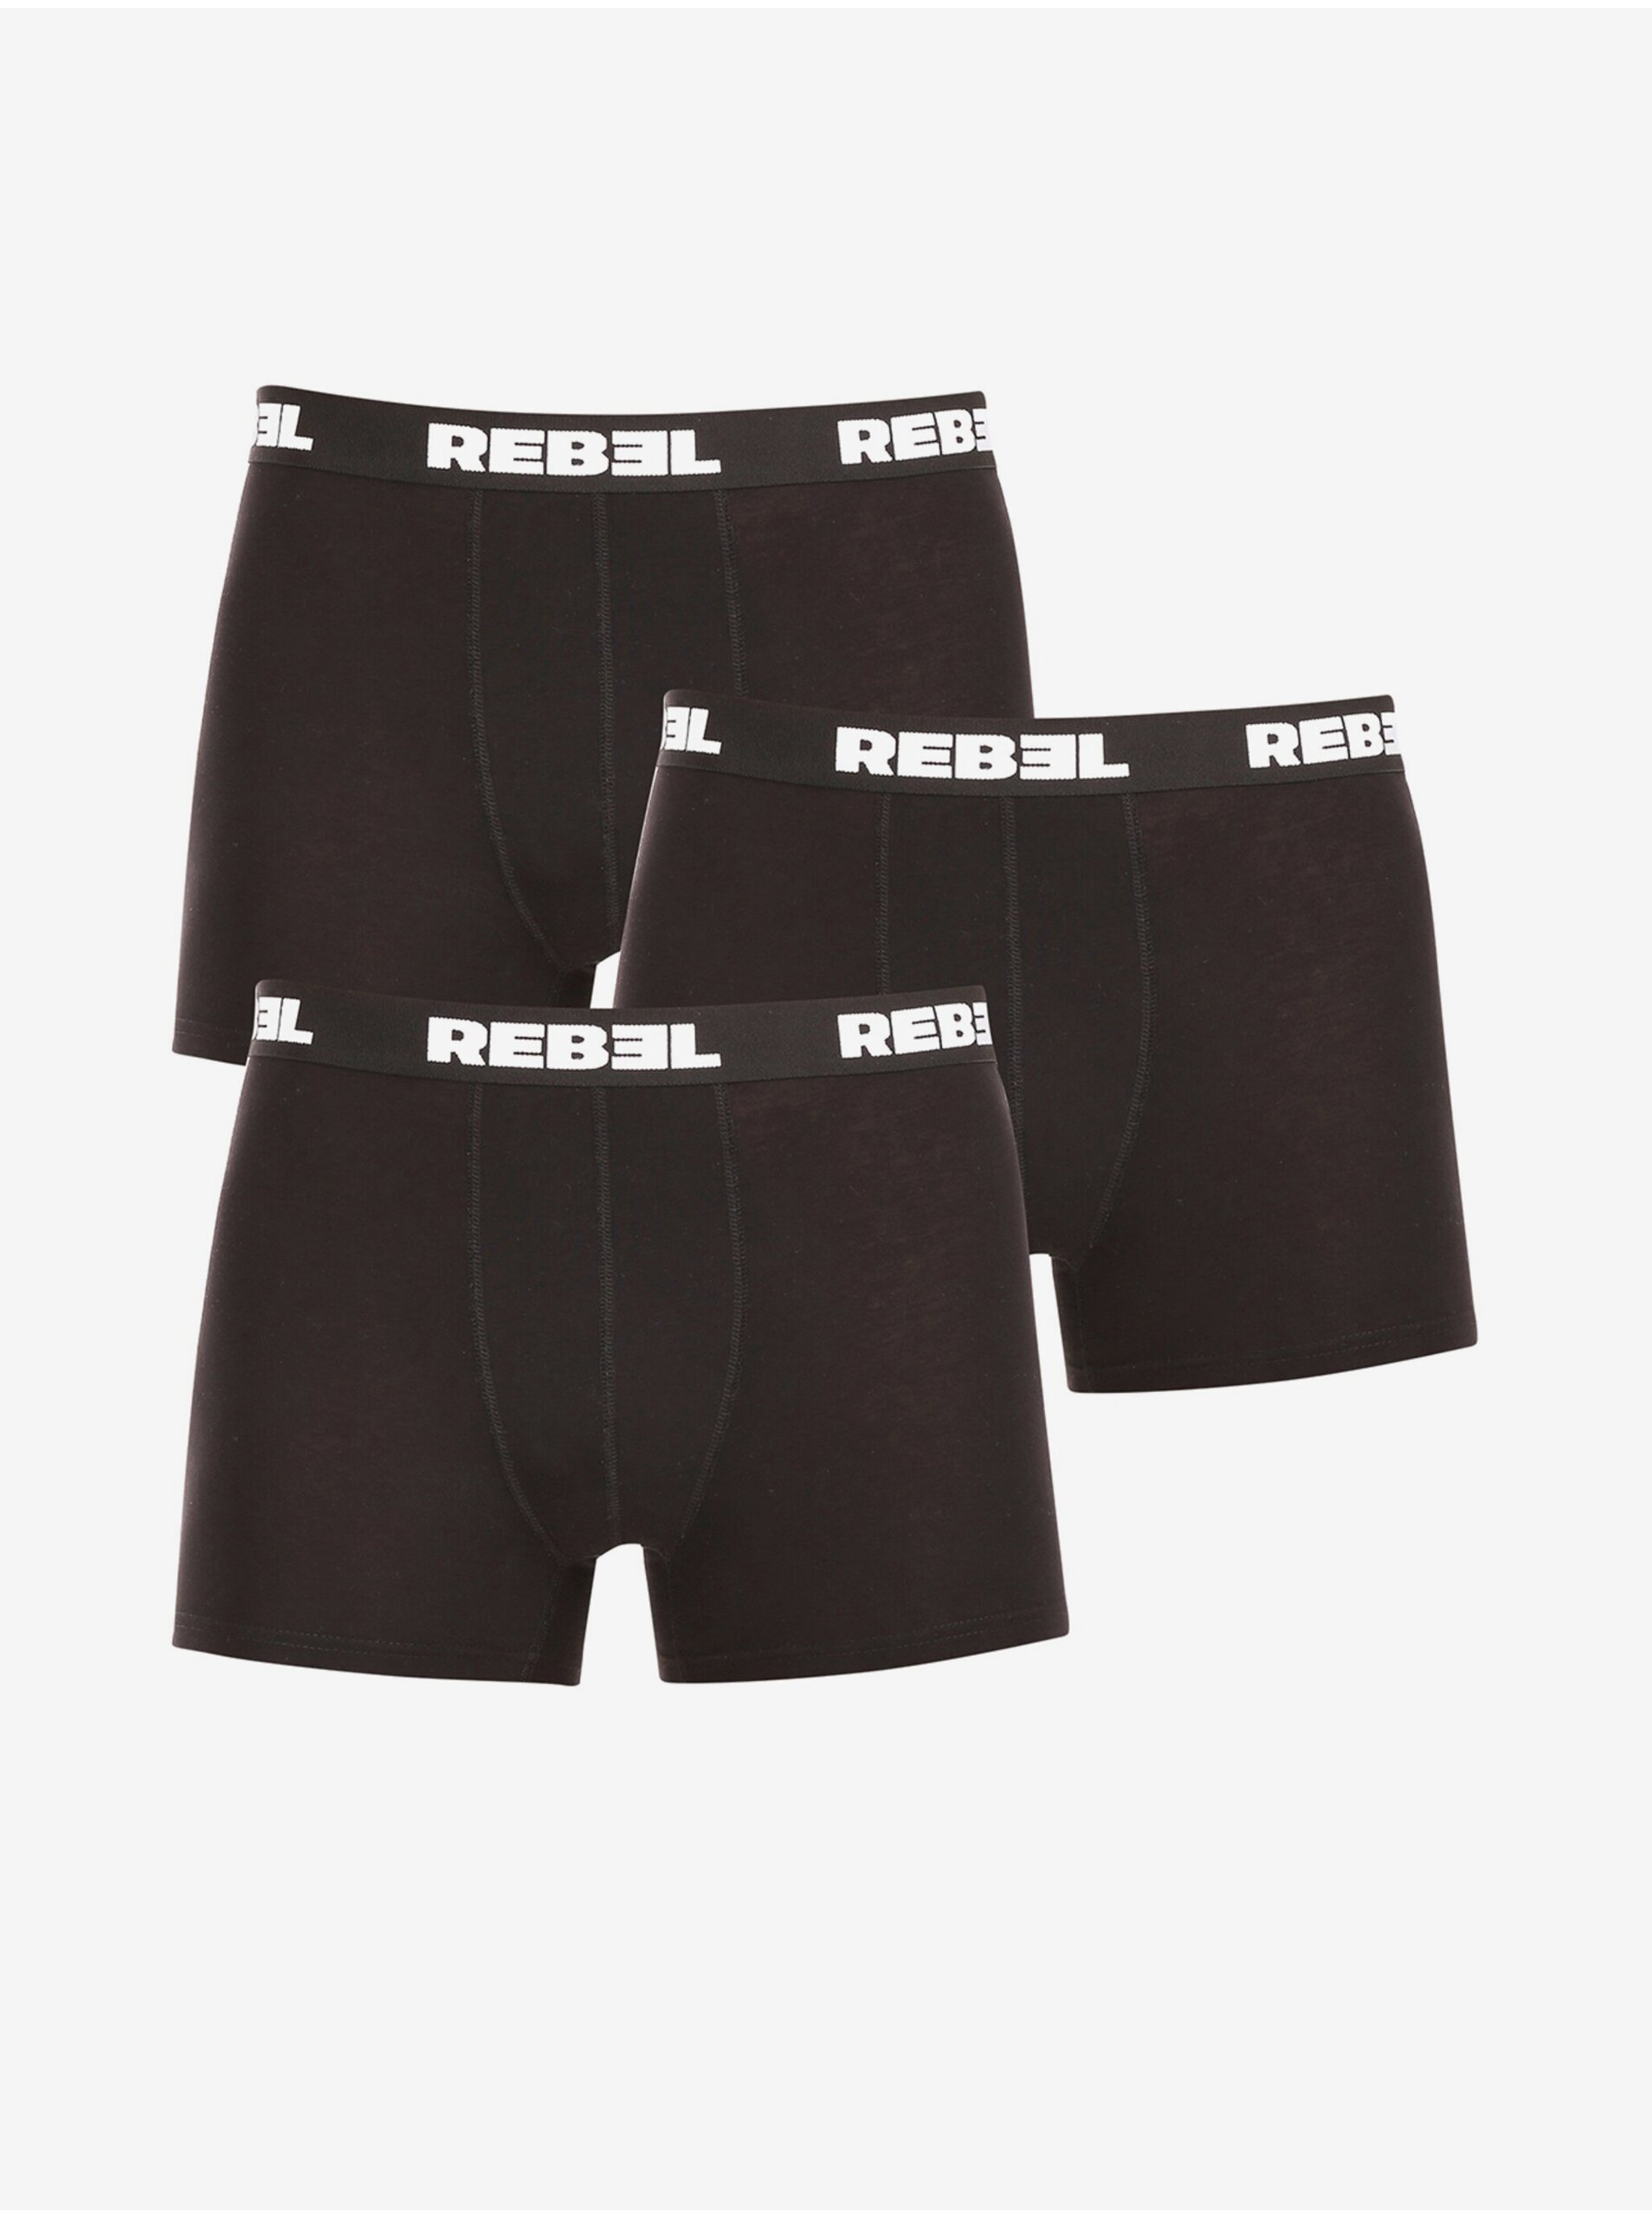 E-shop Sada tří pánských boxerek v černé barvě Nedeto Rebel